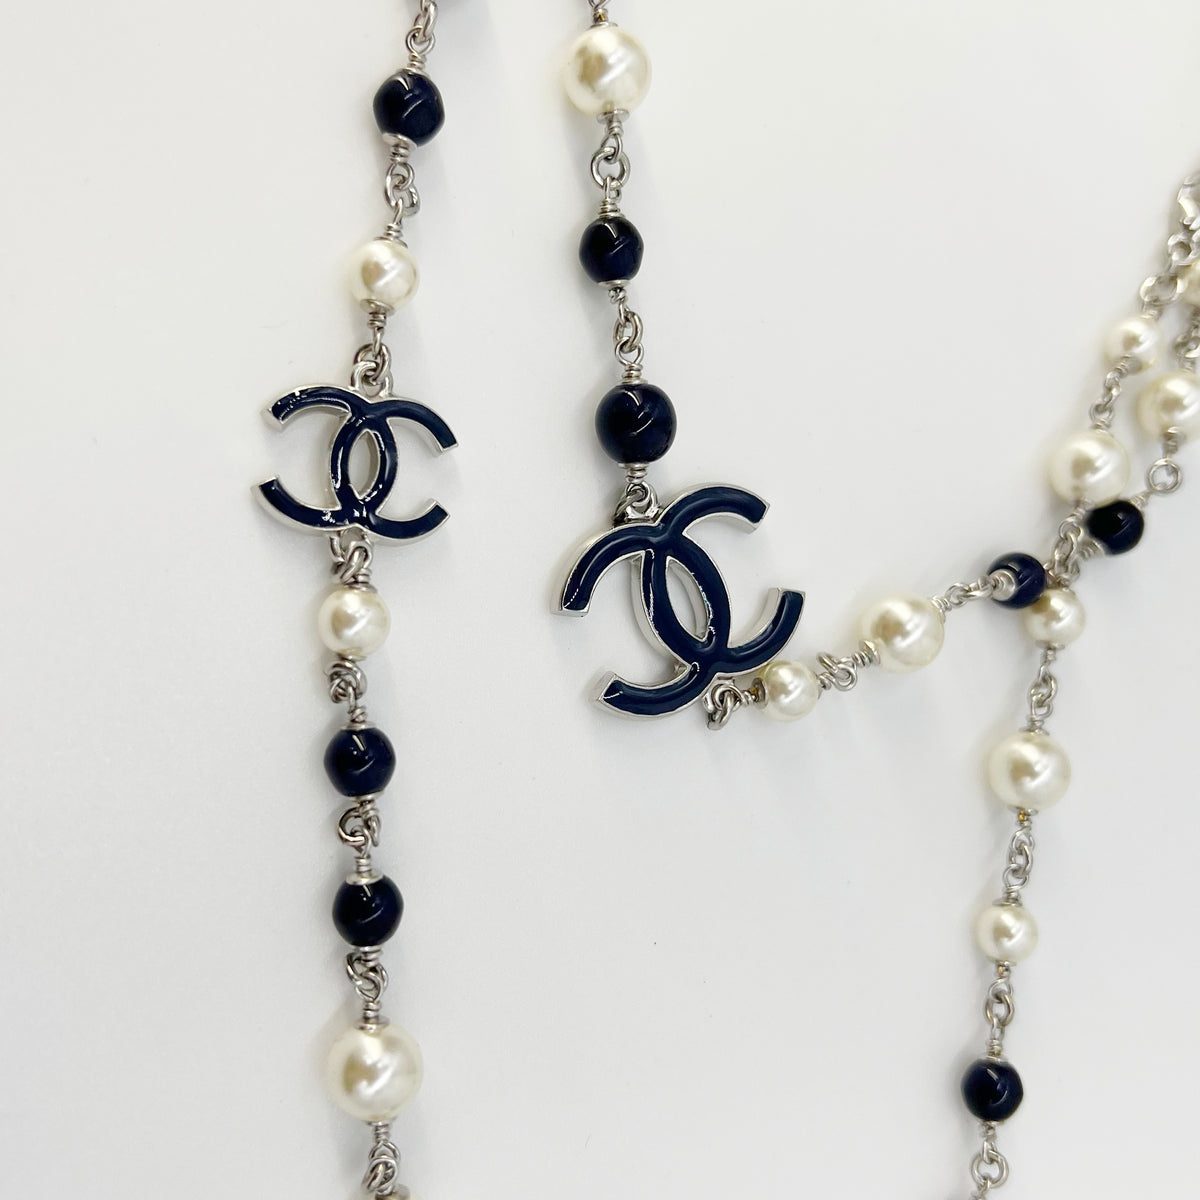 Authentic Vintage Chanel bracelet CC logo black faux pearl beads silve